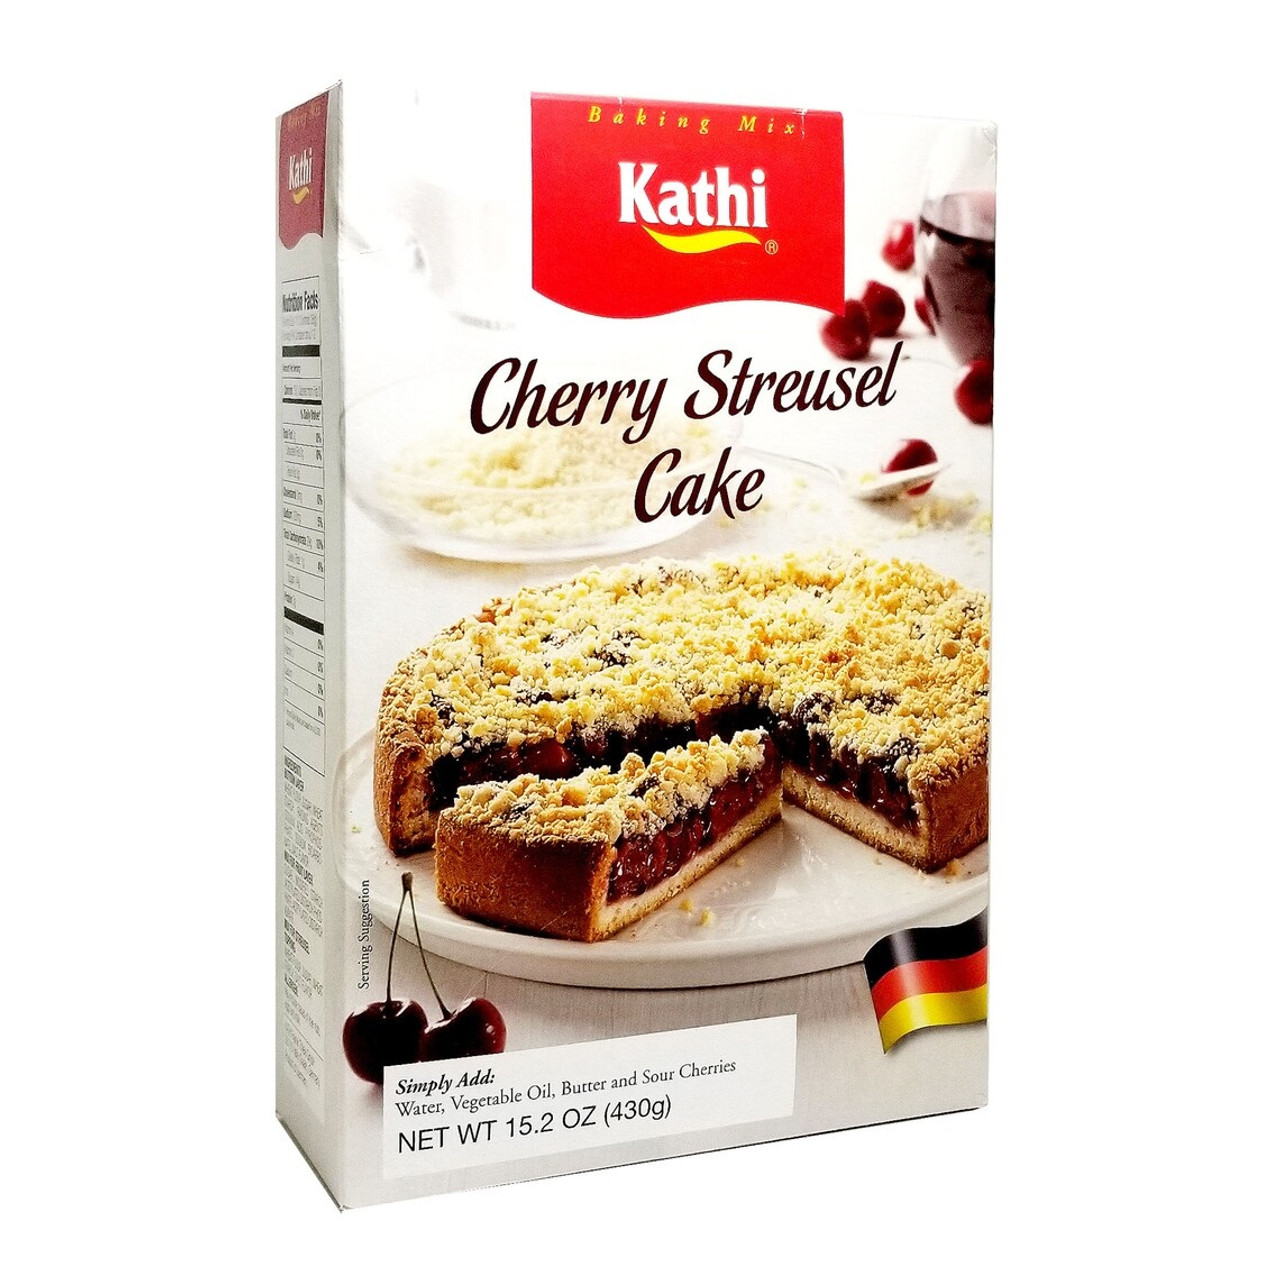 Kathi Baking Mix, German Pretzel - 14.6 oz